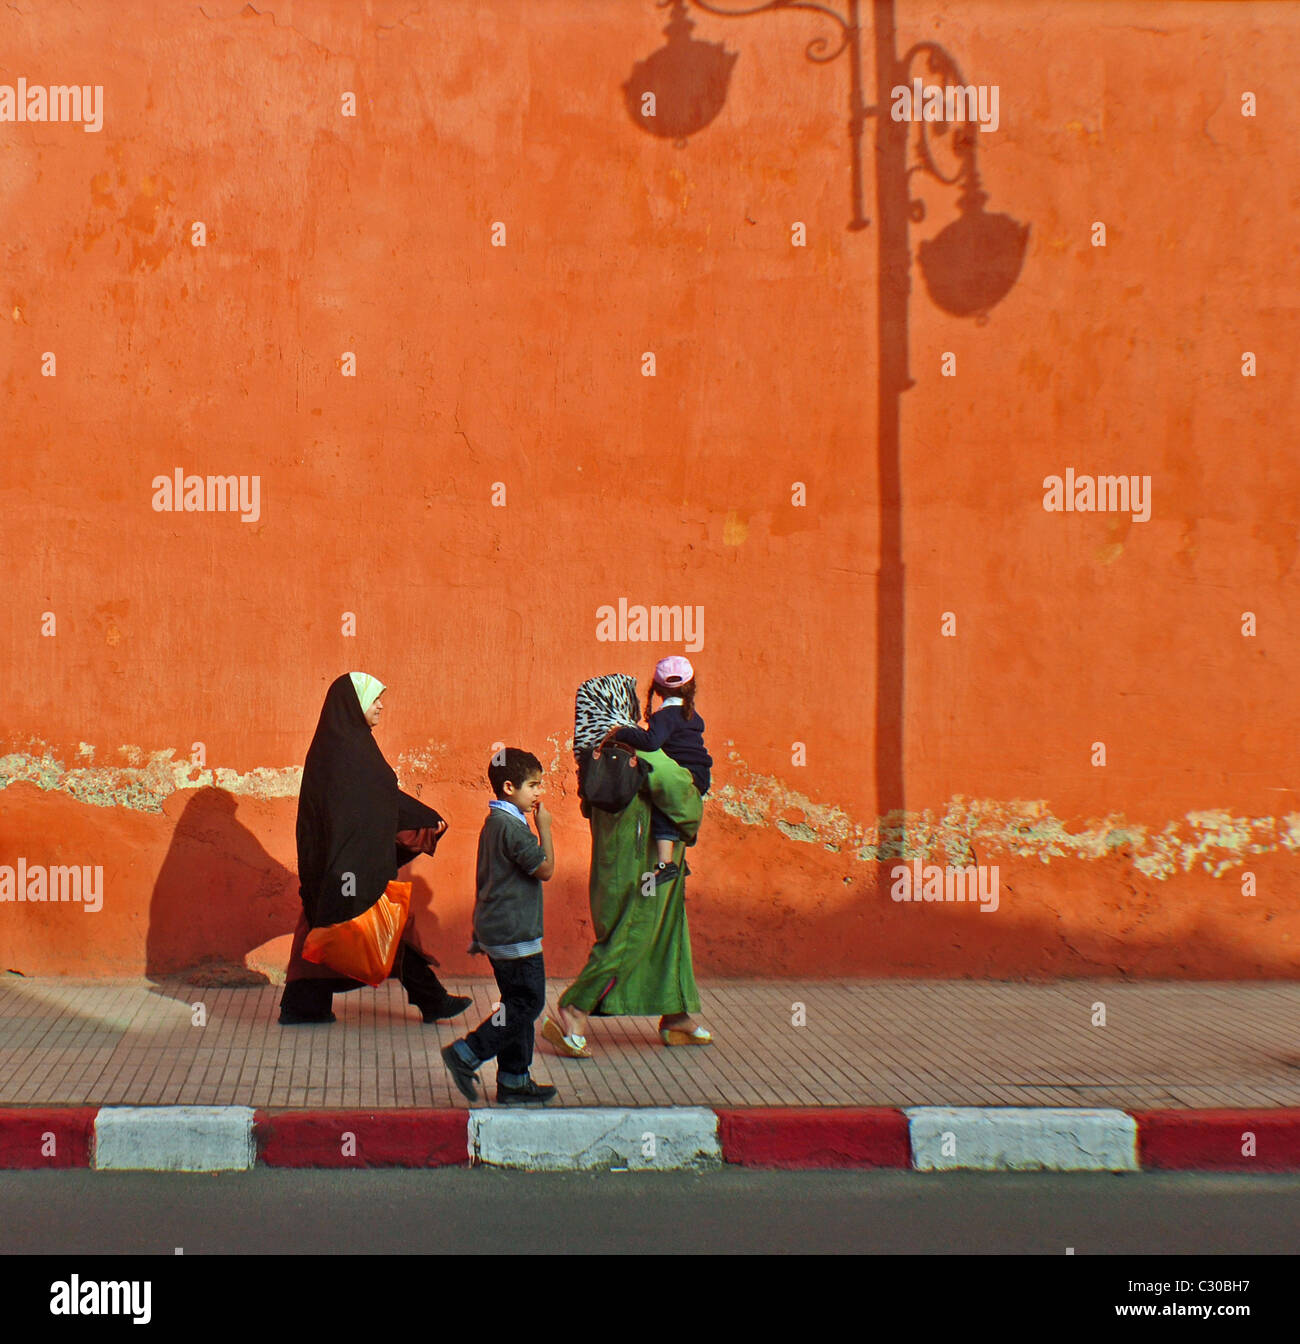 Menschen zu Fuß vorbei an den Schatten von einem Laternenpfahl auf einer farbigen Wand in Marrakesch, Marokko Stockfoto